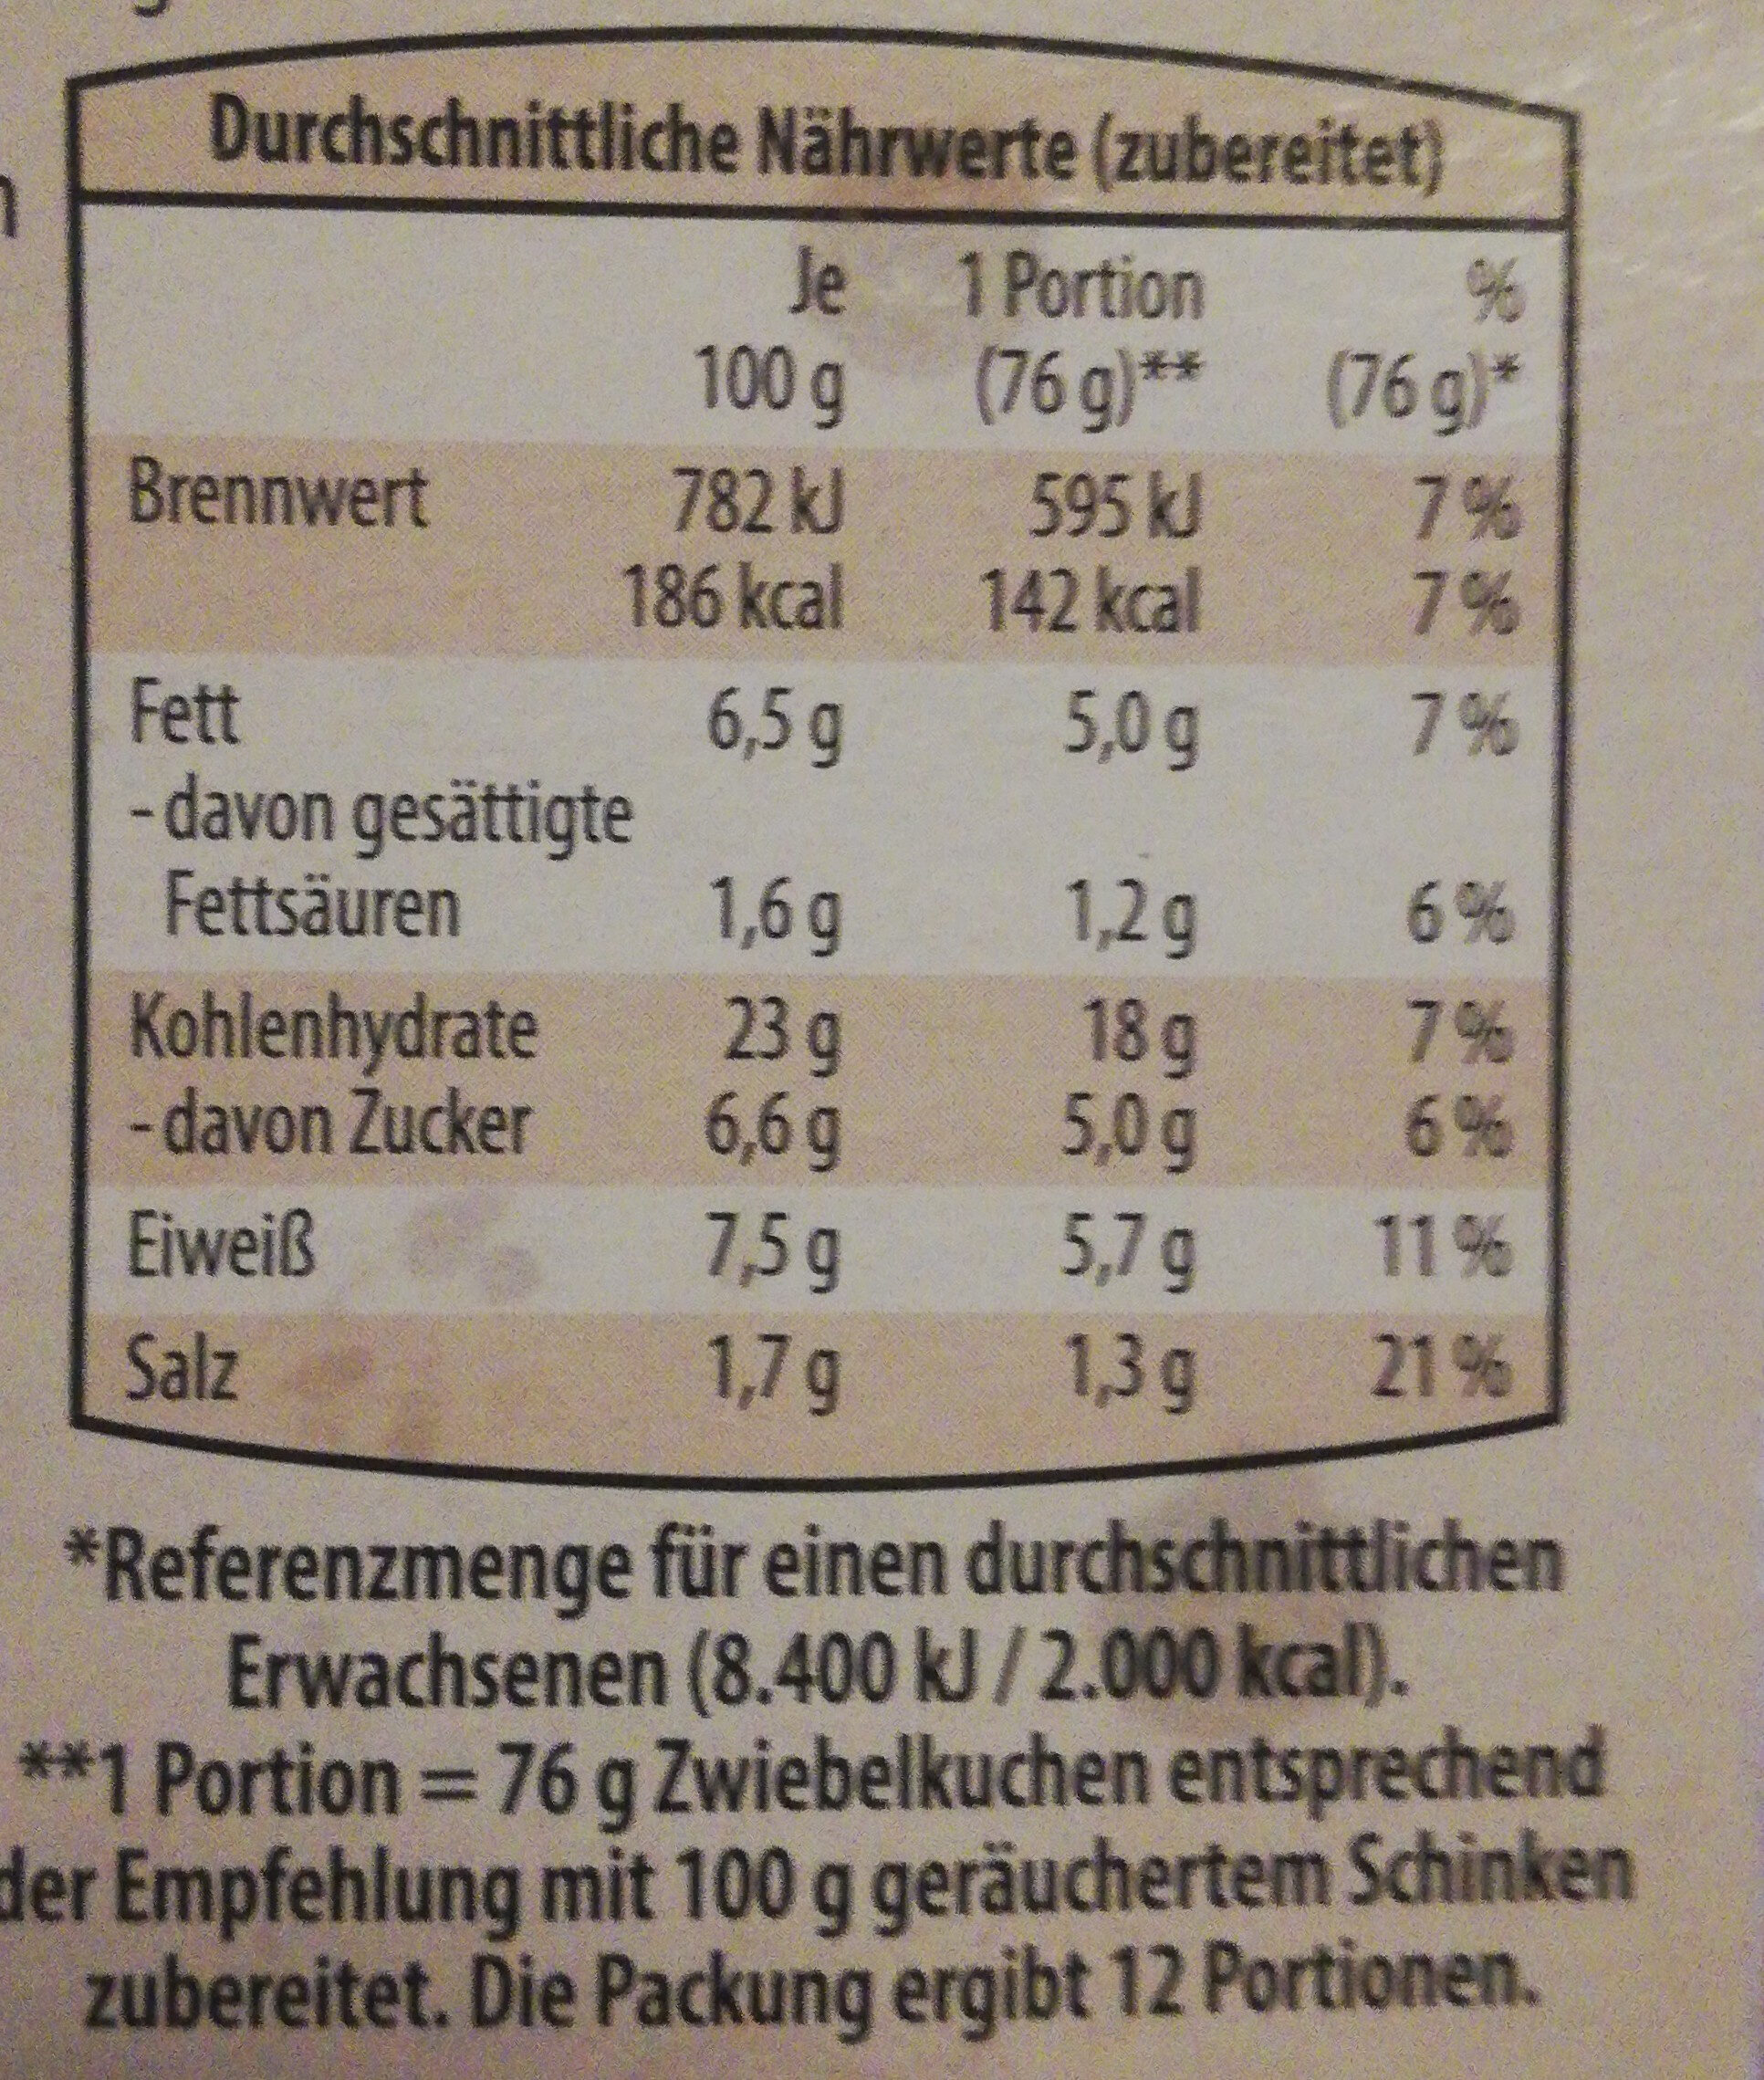 Zwiebelkuchen Elsässer Art - Nutrition facts - de